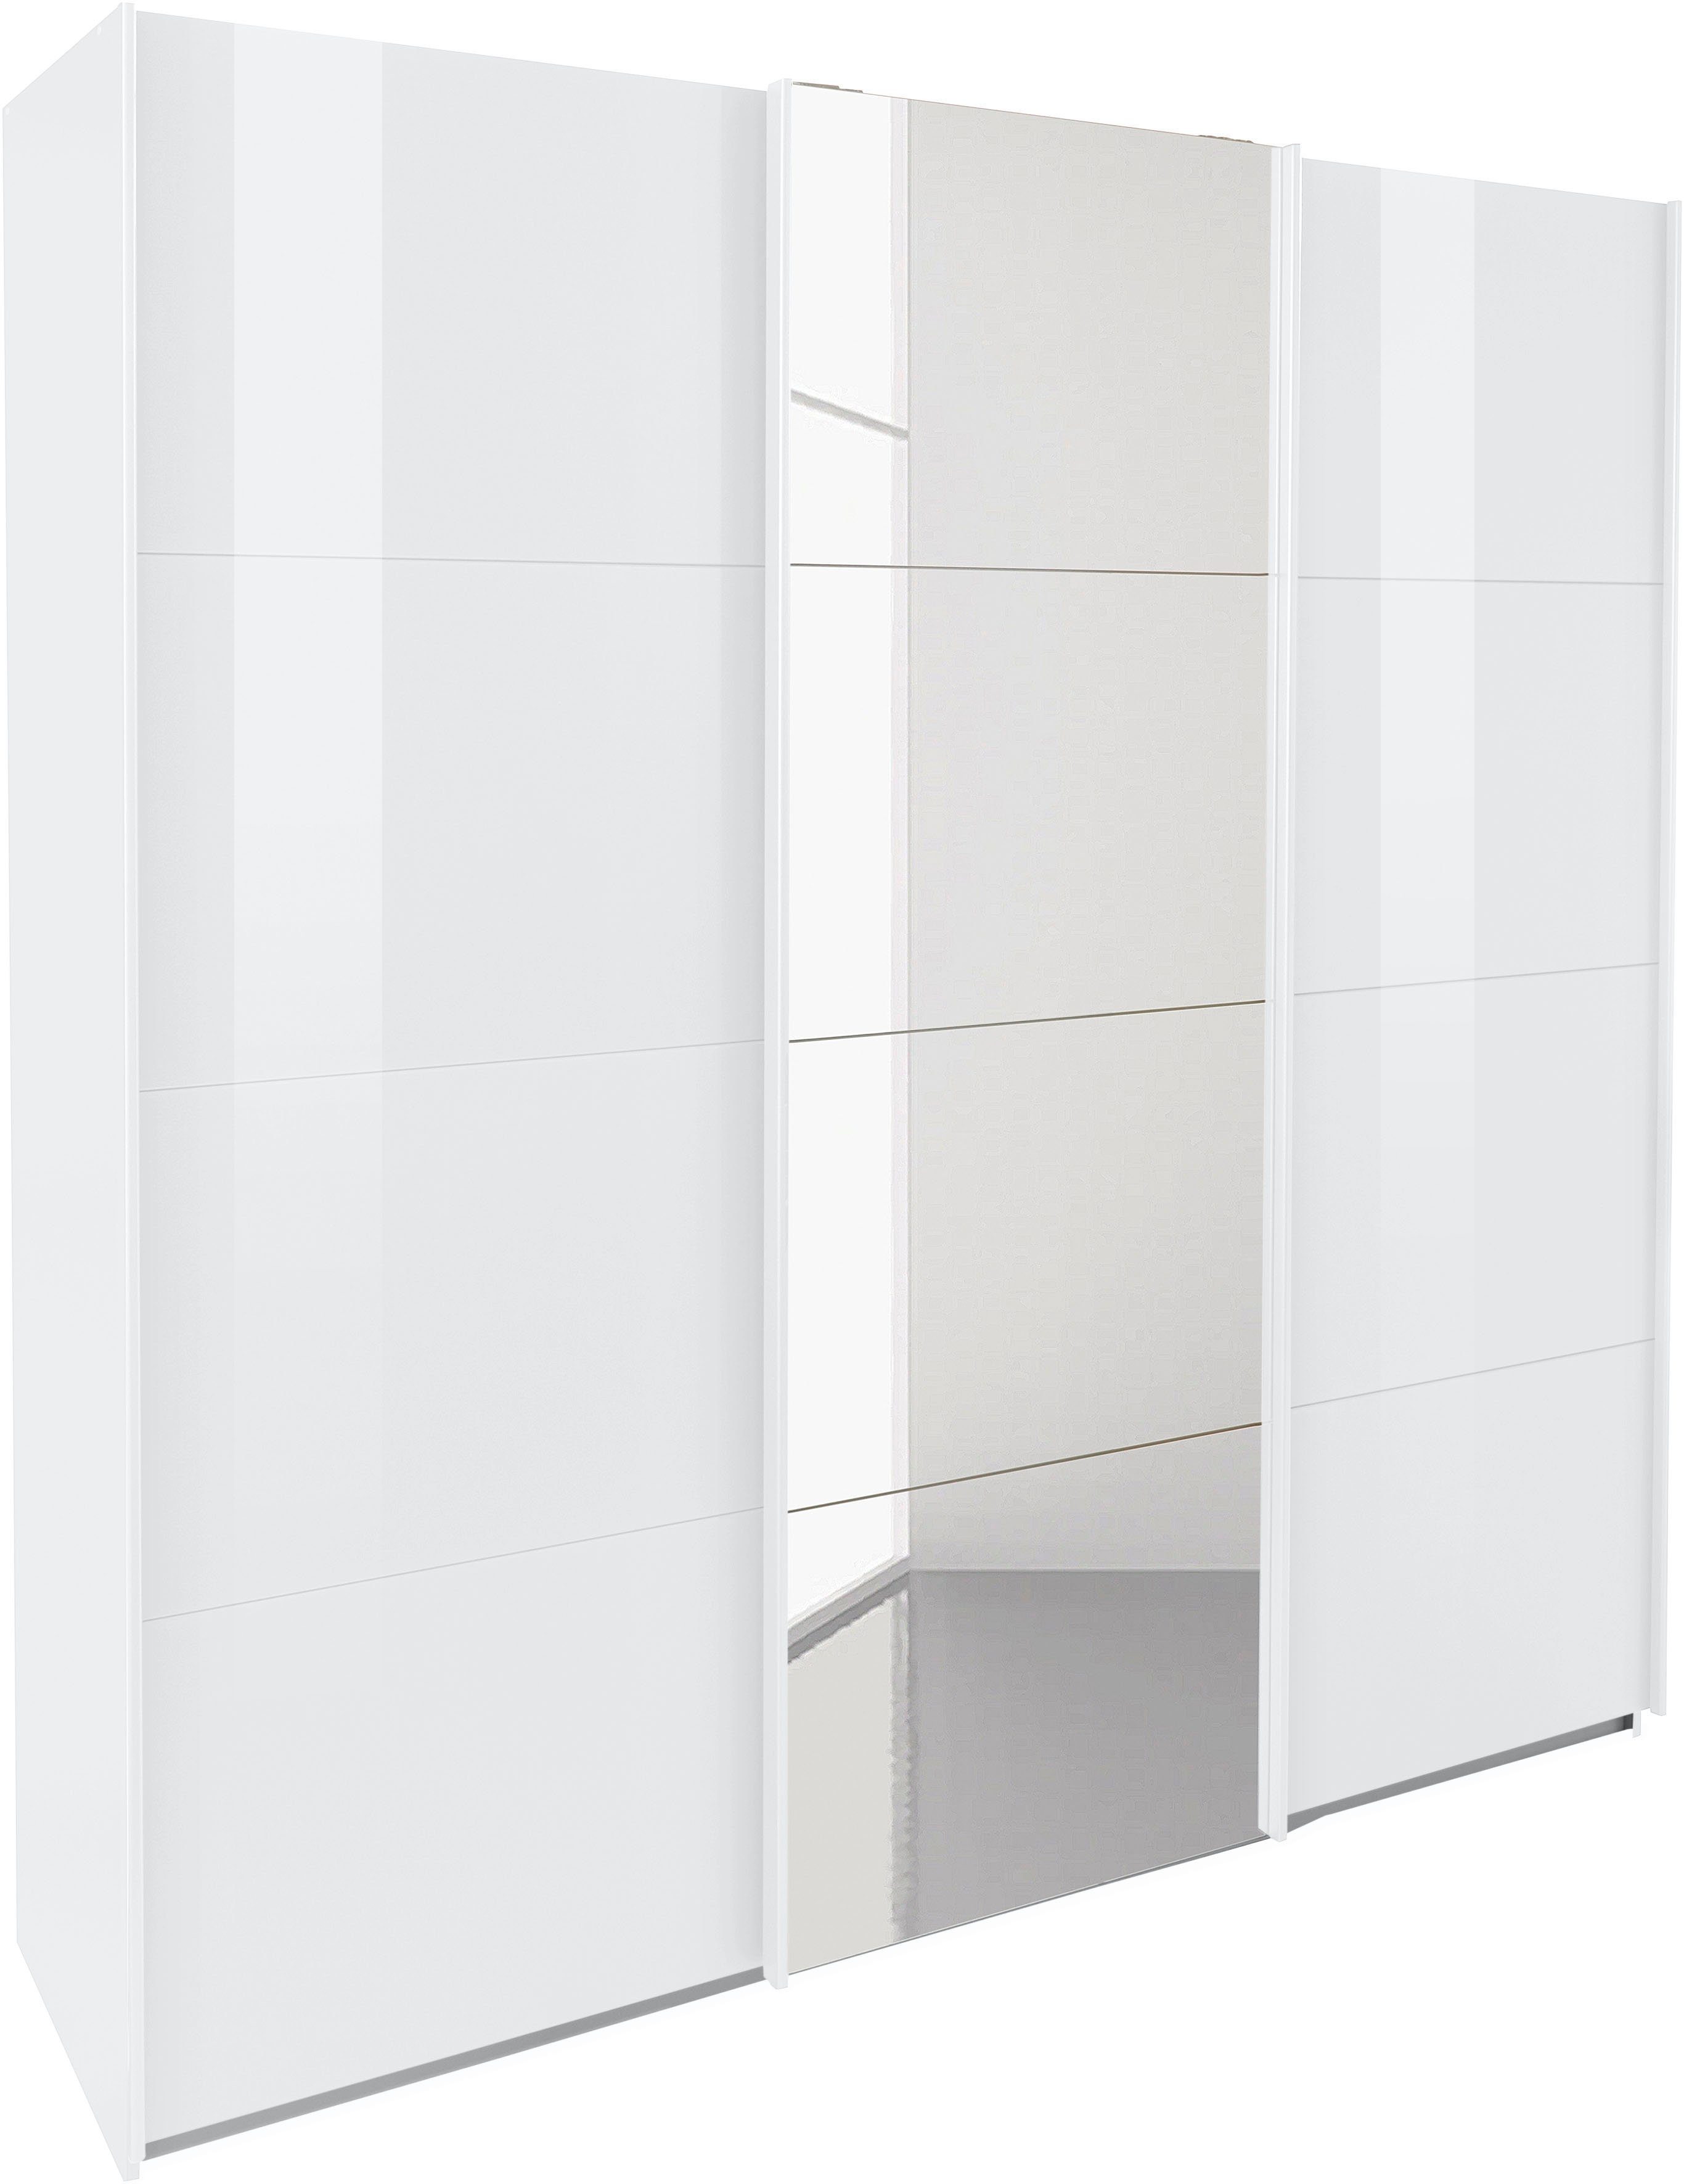 3 inkl. Weiß zusätzlichen Oteli Weiß/Hochglanz Böden Innenschubladen mit Wäscheeinteilung sowie rauch Schwebetürenschrank